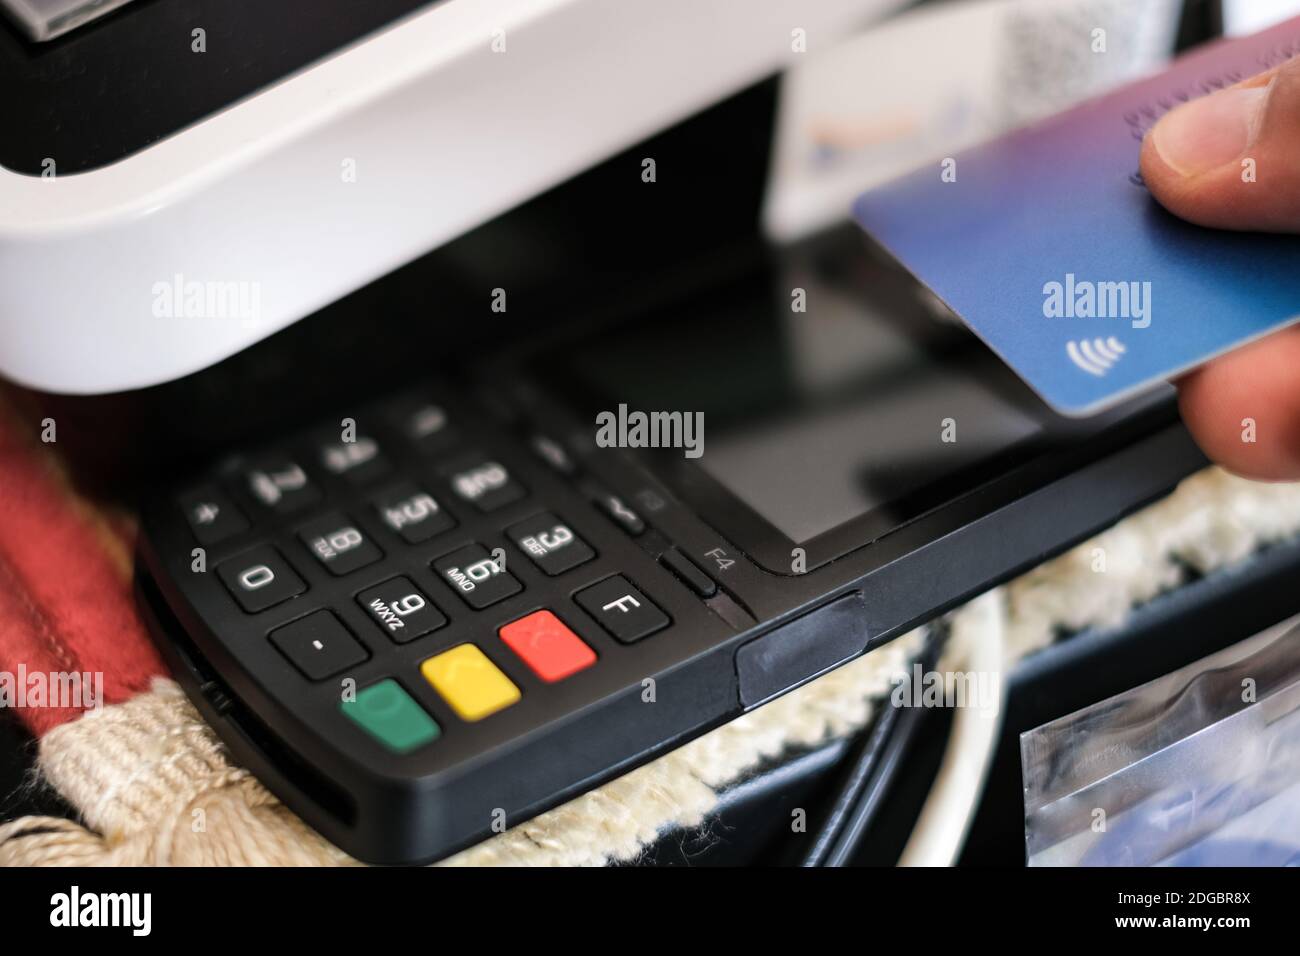 Kontaktlose Bezahlung mit Kreditkarte Maschine Terminal, bargeldloses Bezahlen Stockfoto